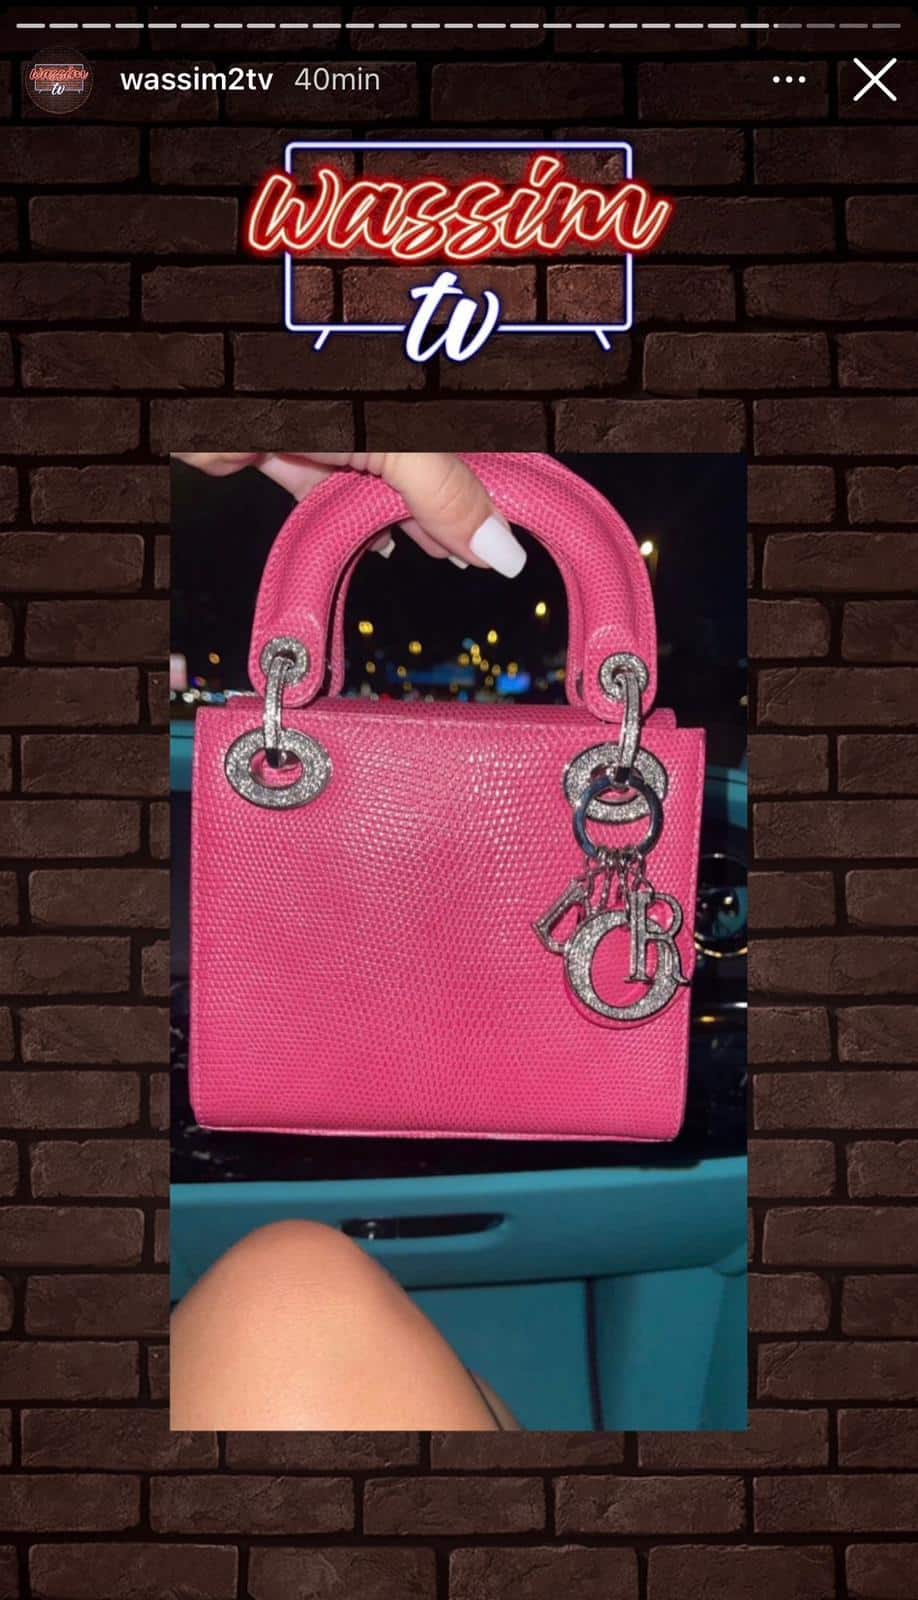 Milla Jasmine : elle s’affiche avec un faux sac Dior et se fait tacler